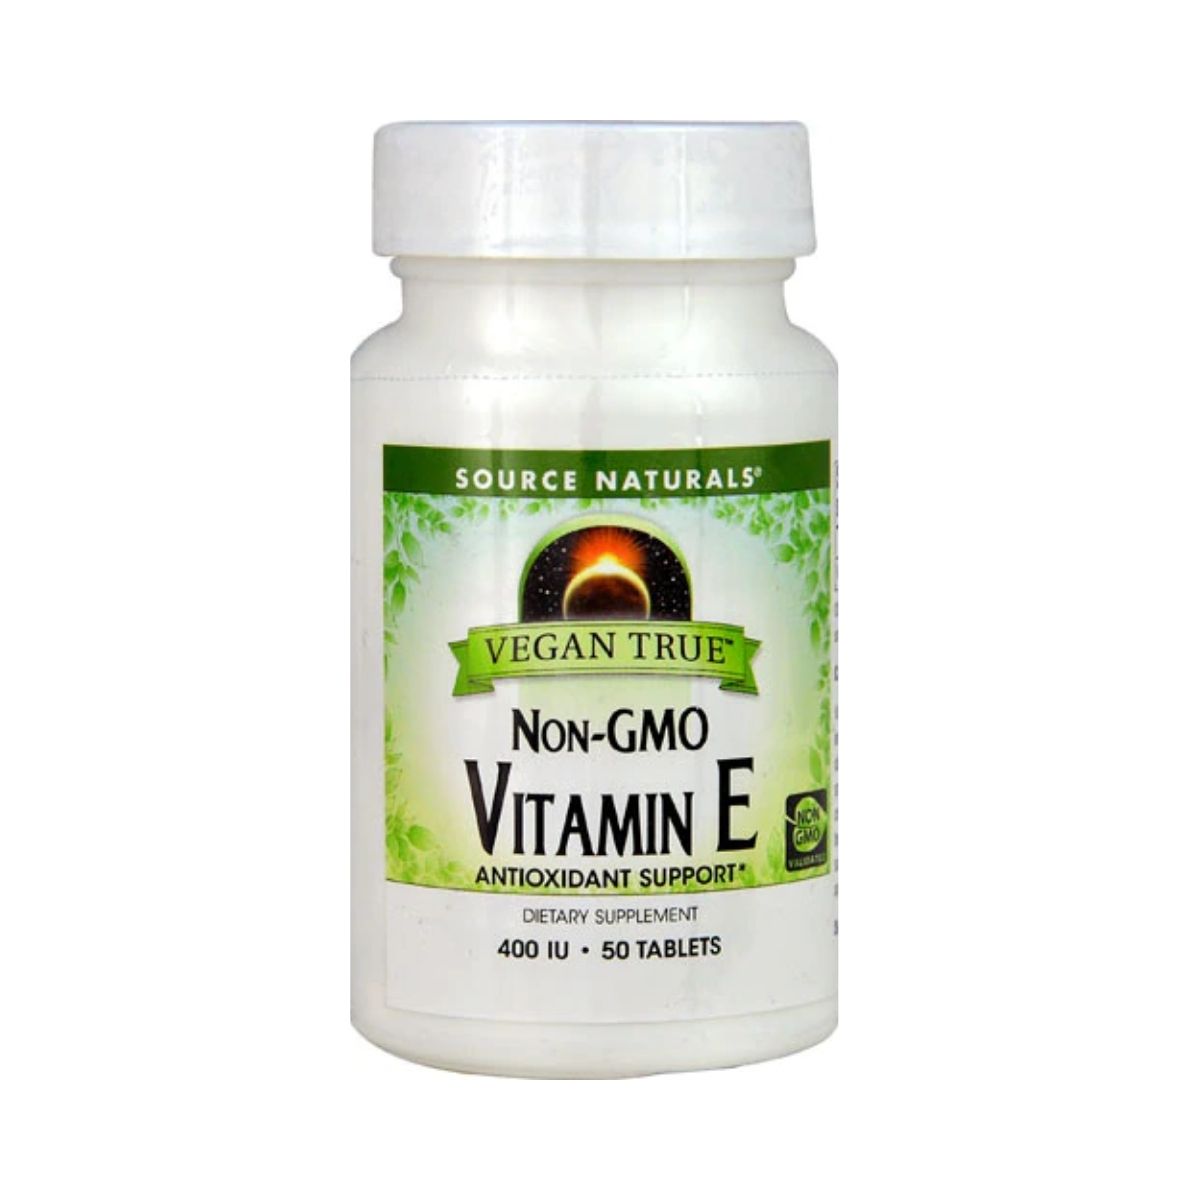 Vitamin E, Non-GMO Vegan